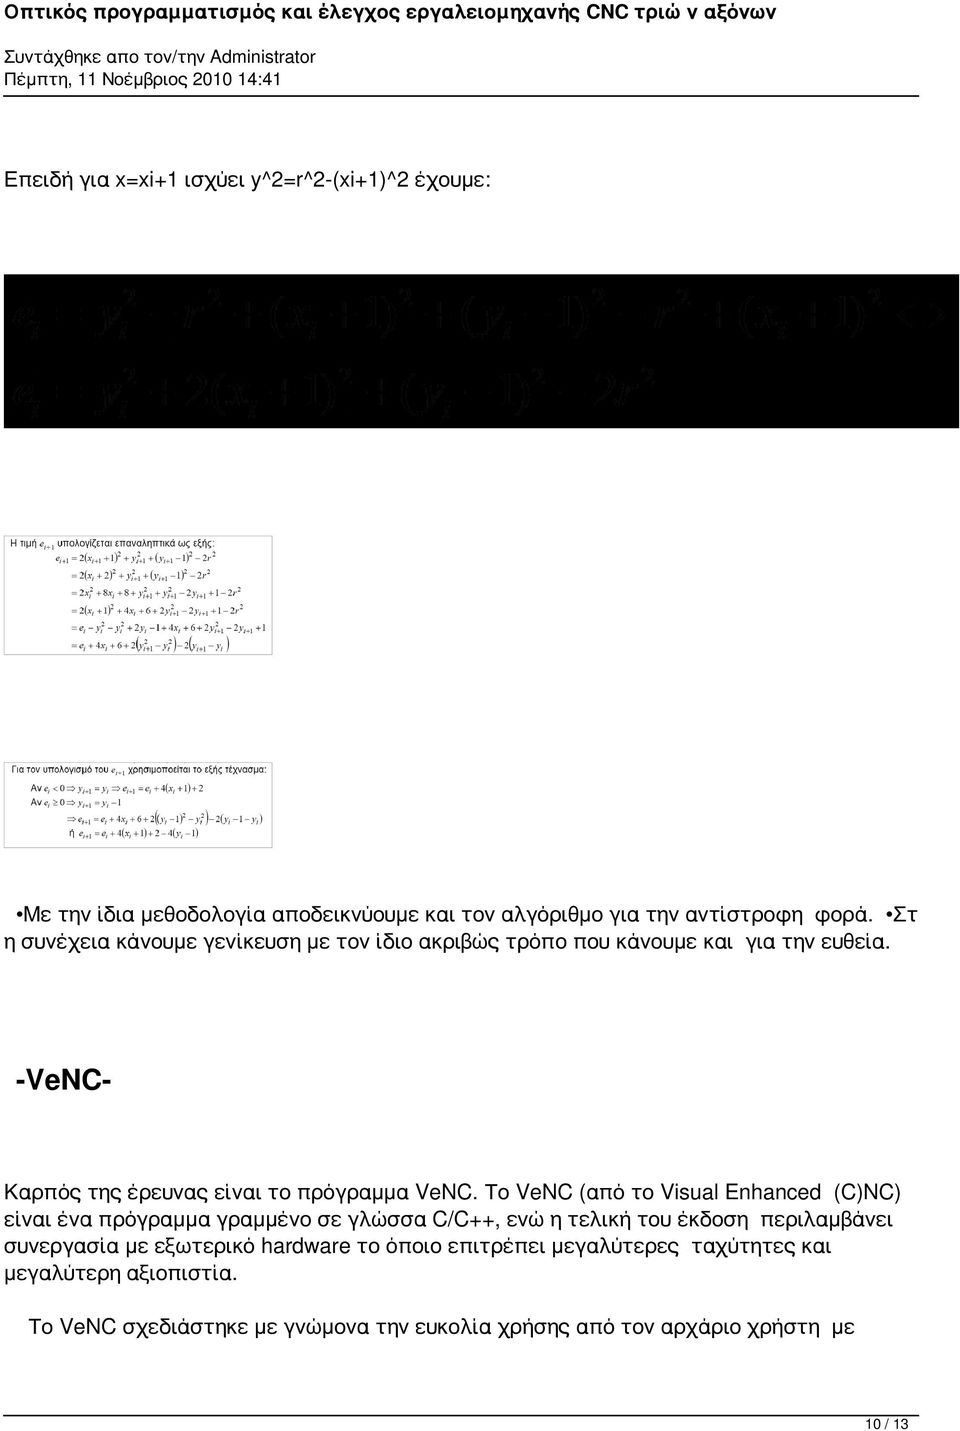 Το VeNC (από το Visual Enhanced (C)NC) είναι ένα πρόγραμμα γραμμένο σε γλώσσα C/C++, ενώ η τελική του έκδοση περιλαμβάνει συνεργασία με